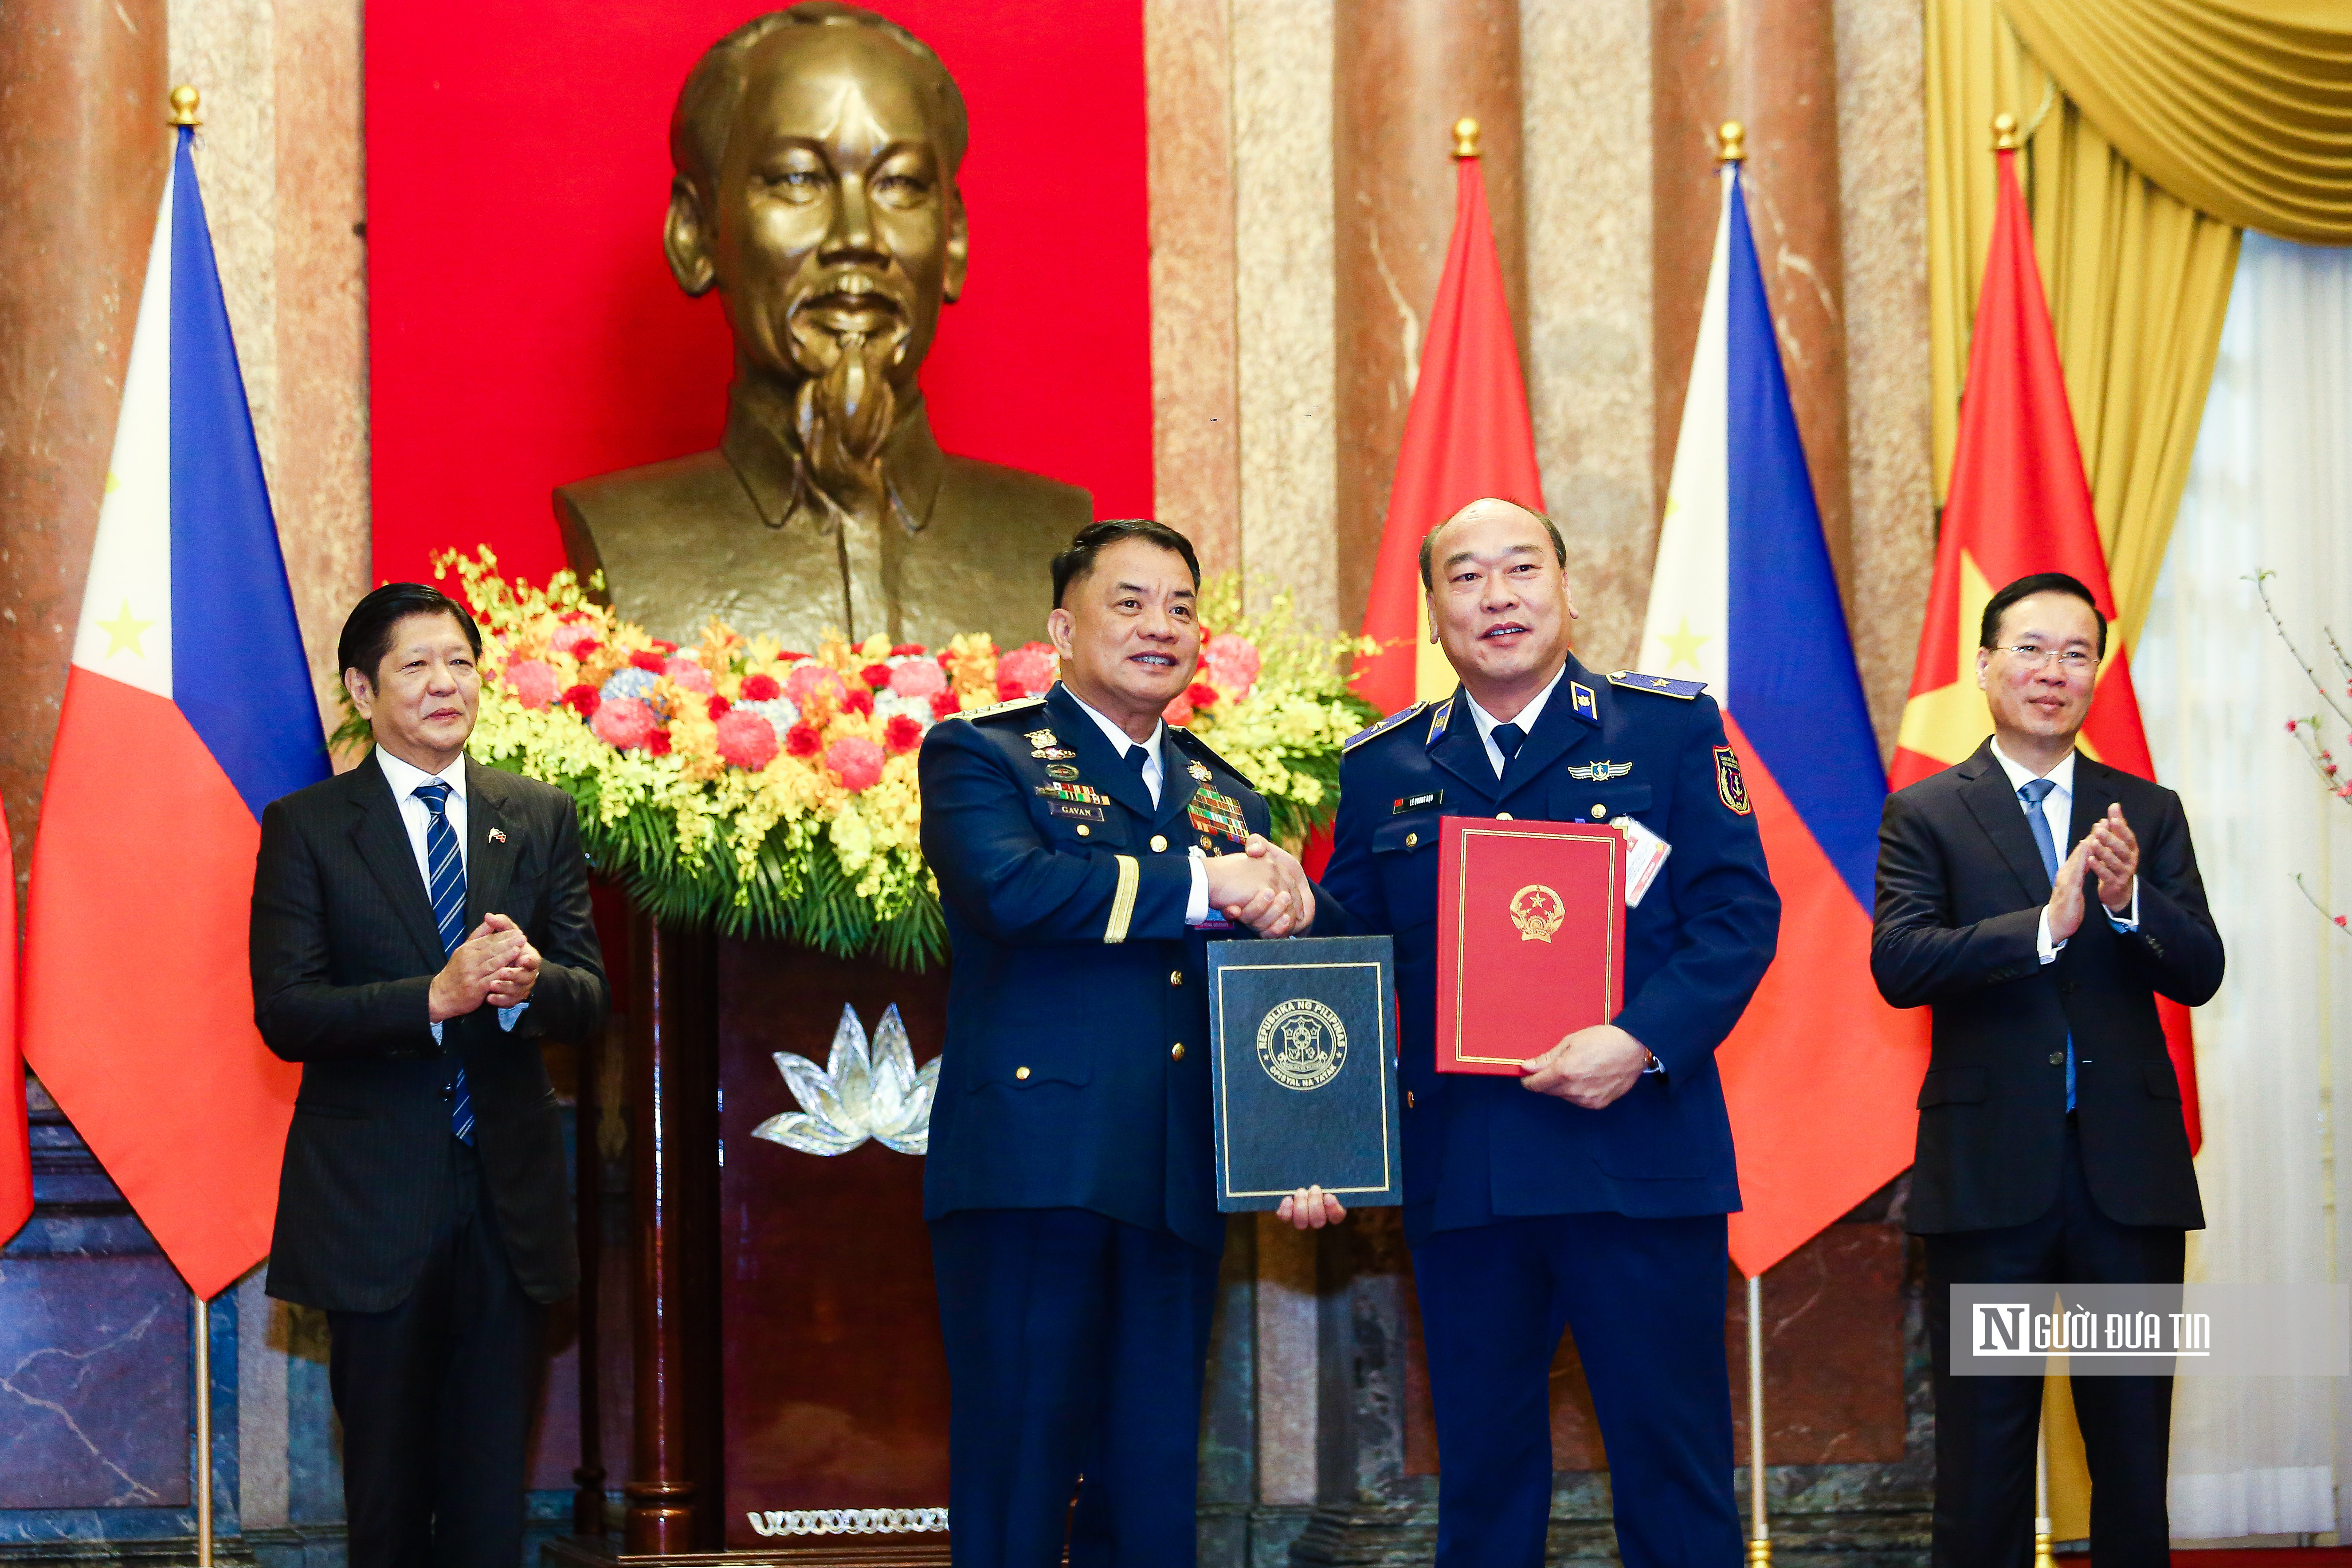 Tiêu điểm - Bắn 21 phát đại bác chào mừng Tổng thống Philippines thăm Việt Nam (Hình 15).